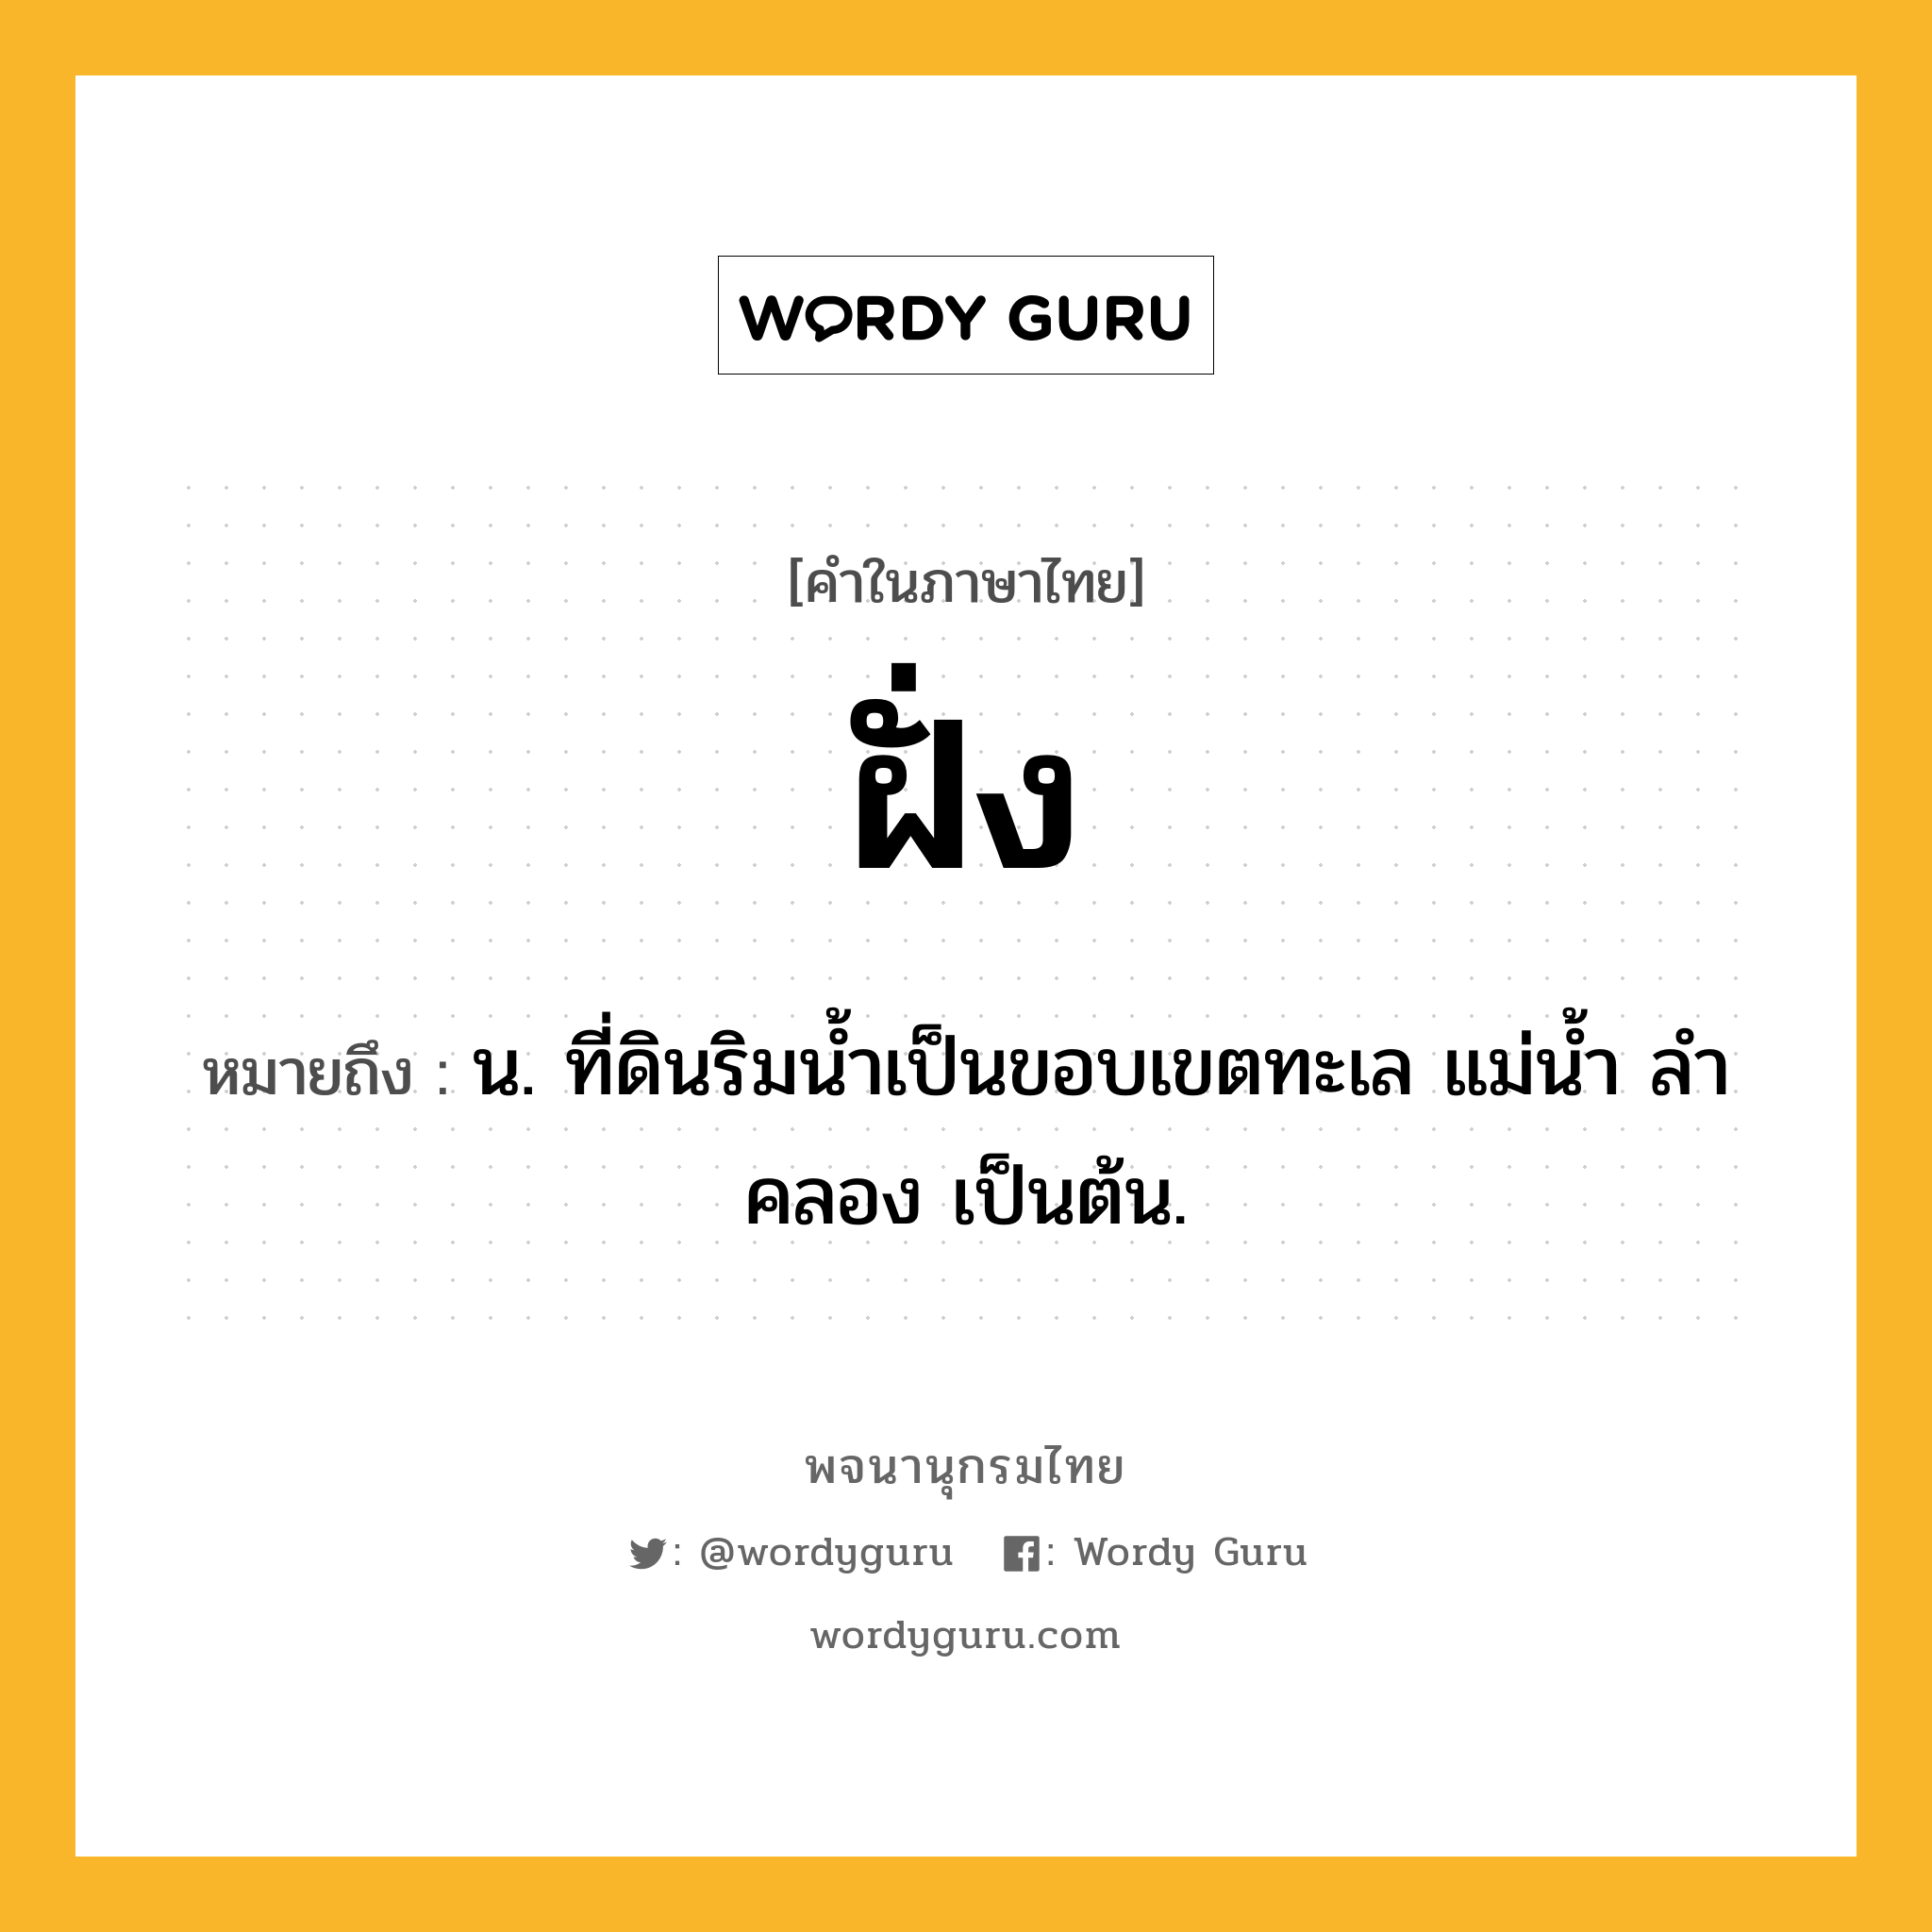 ฝั่ง ความหมาย หมายถึงอะไร?, คำในภาษาไทย ฝั่ง หมายถึง น. ที่ดินริมนํ้าเป็นขอบเขตทะเล แม่นํ้า ลําคลอง เป็นต้น.